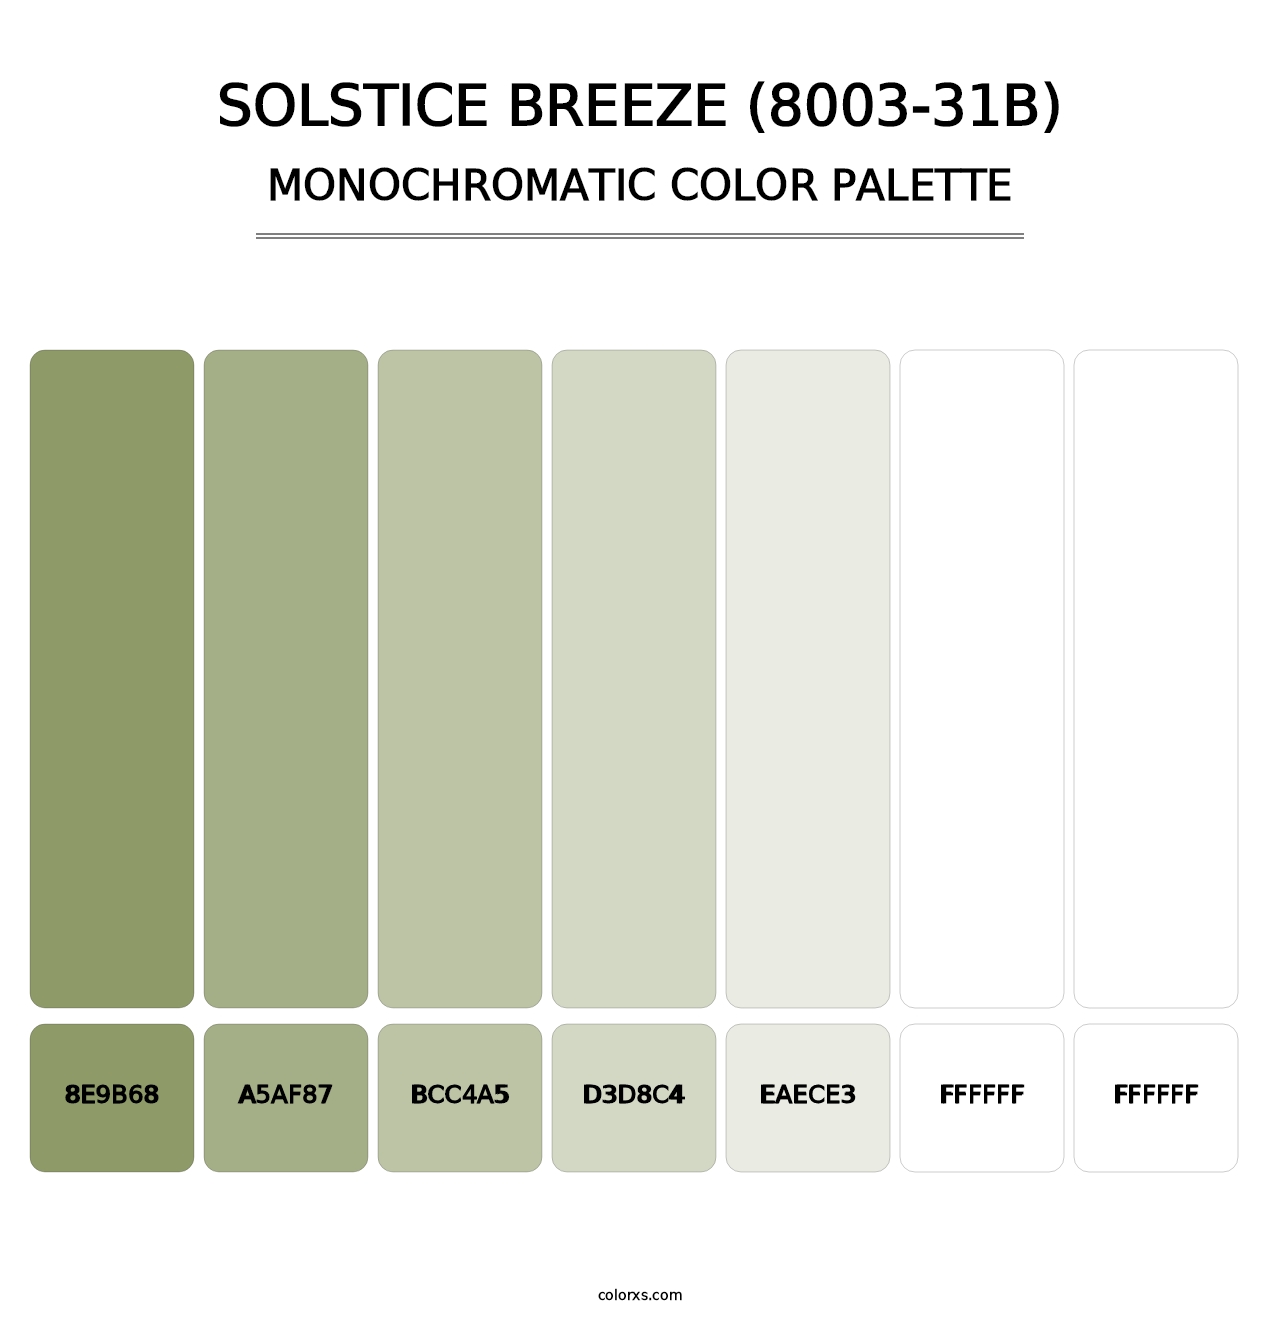 Solstice Breeze (8003-31B) - Monochromatic Color Palette